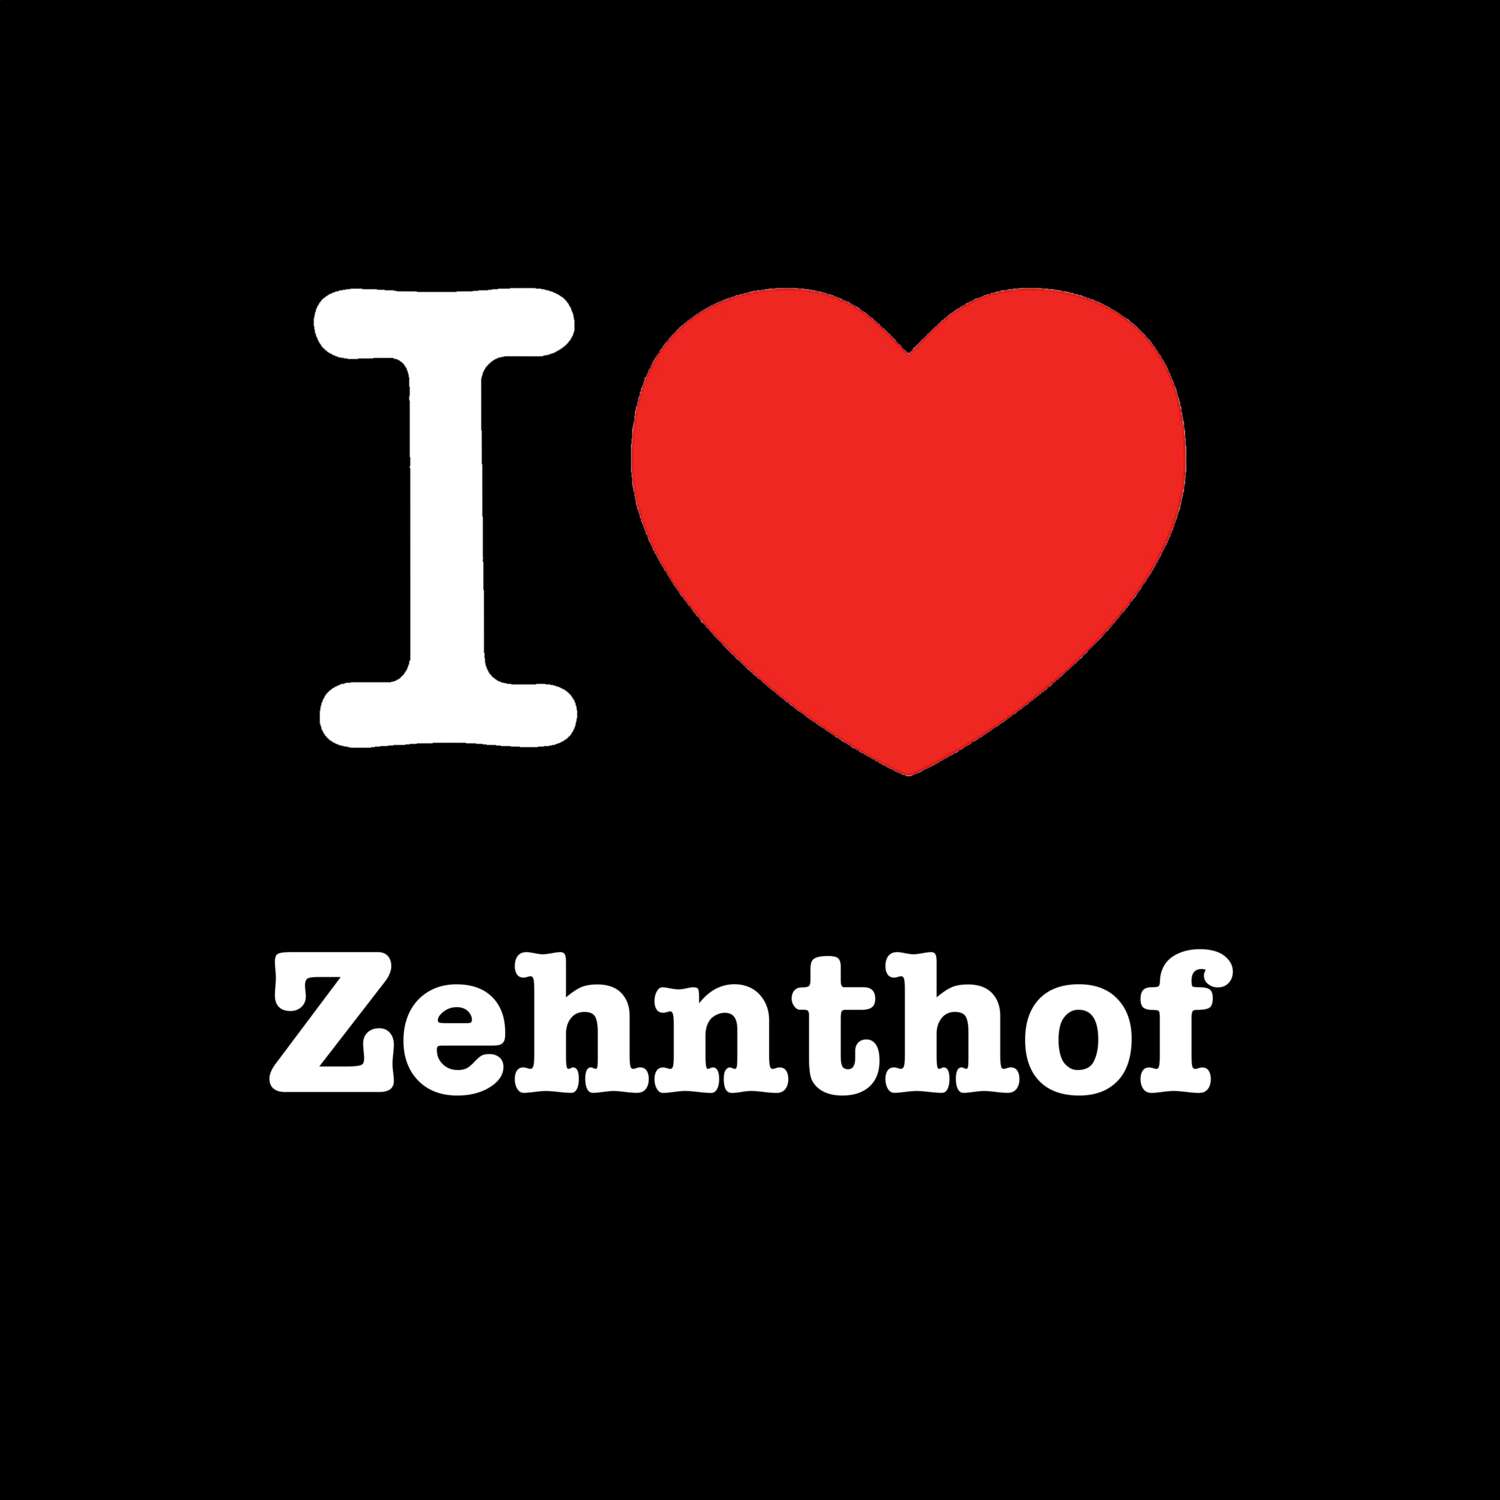 Zehnthof T-Shirt »I love«